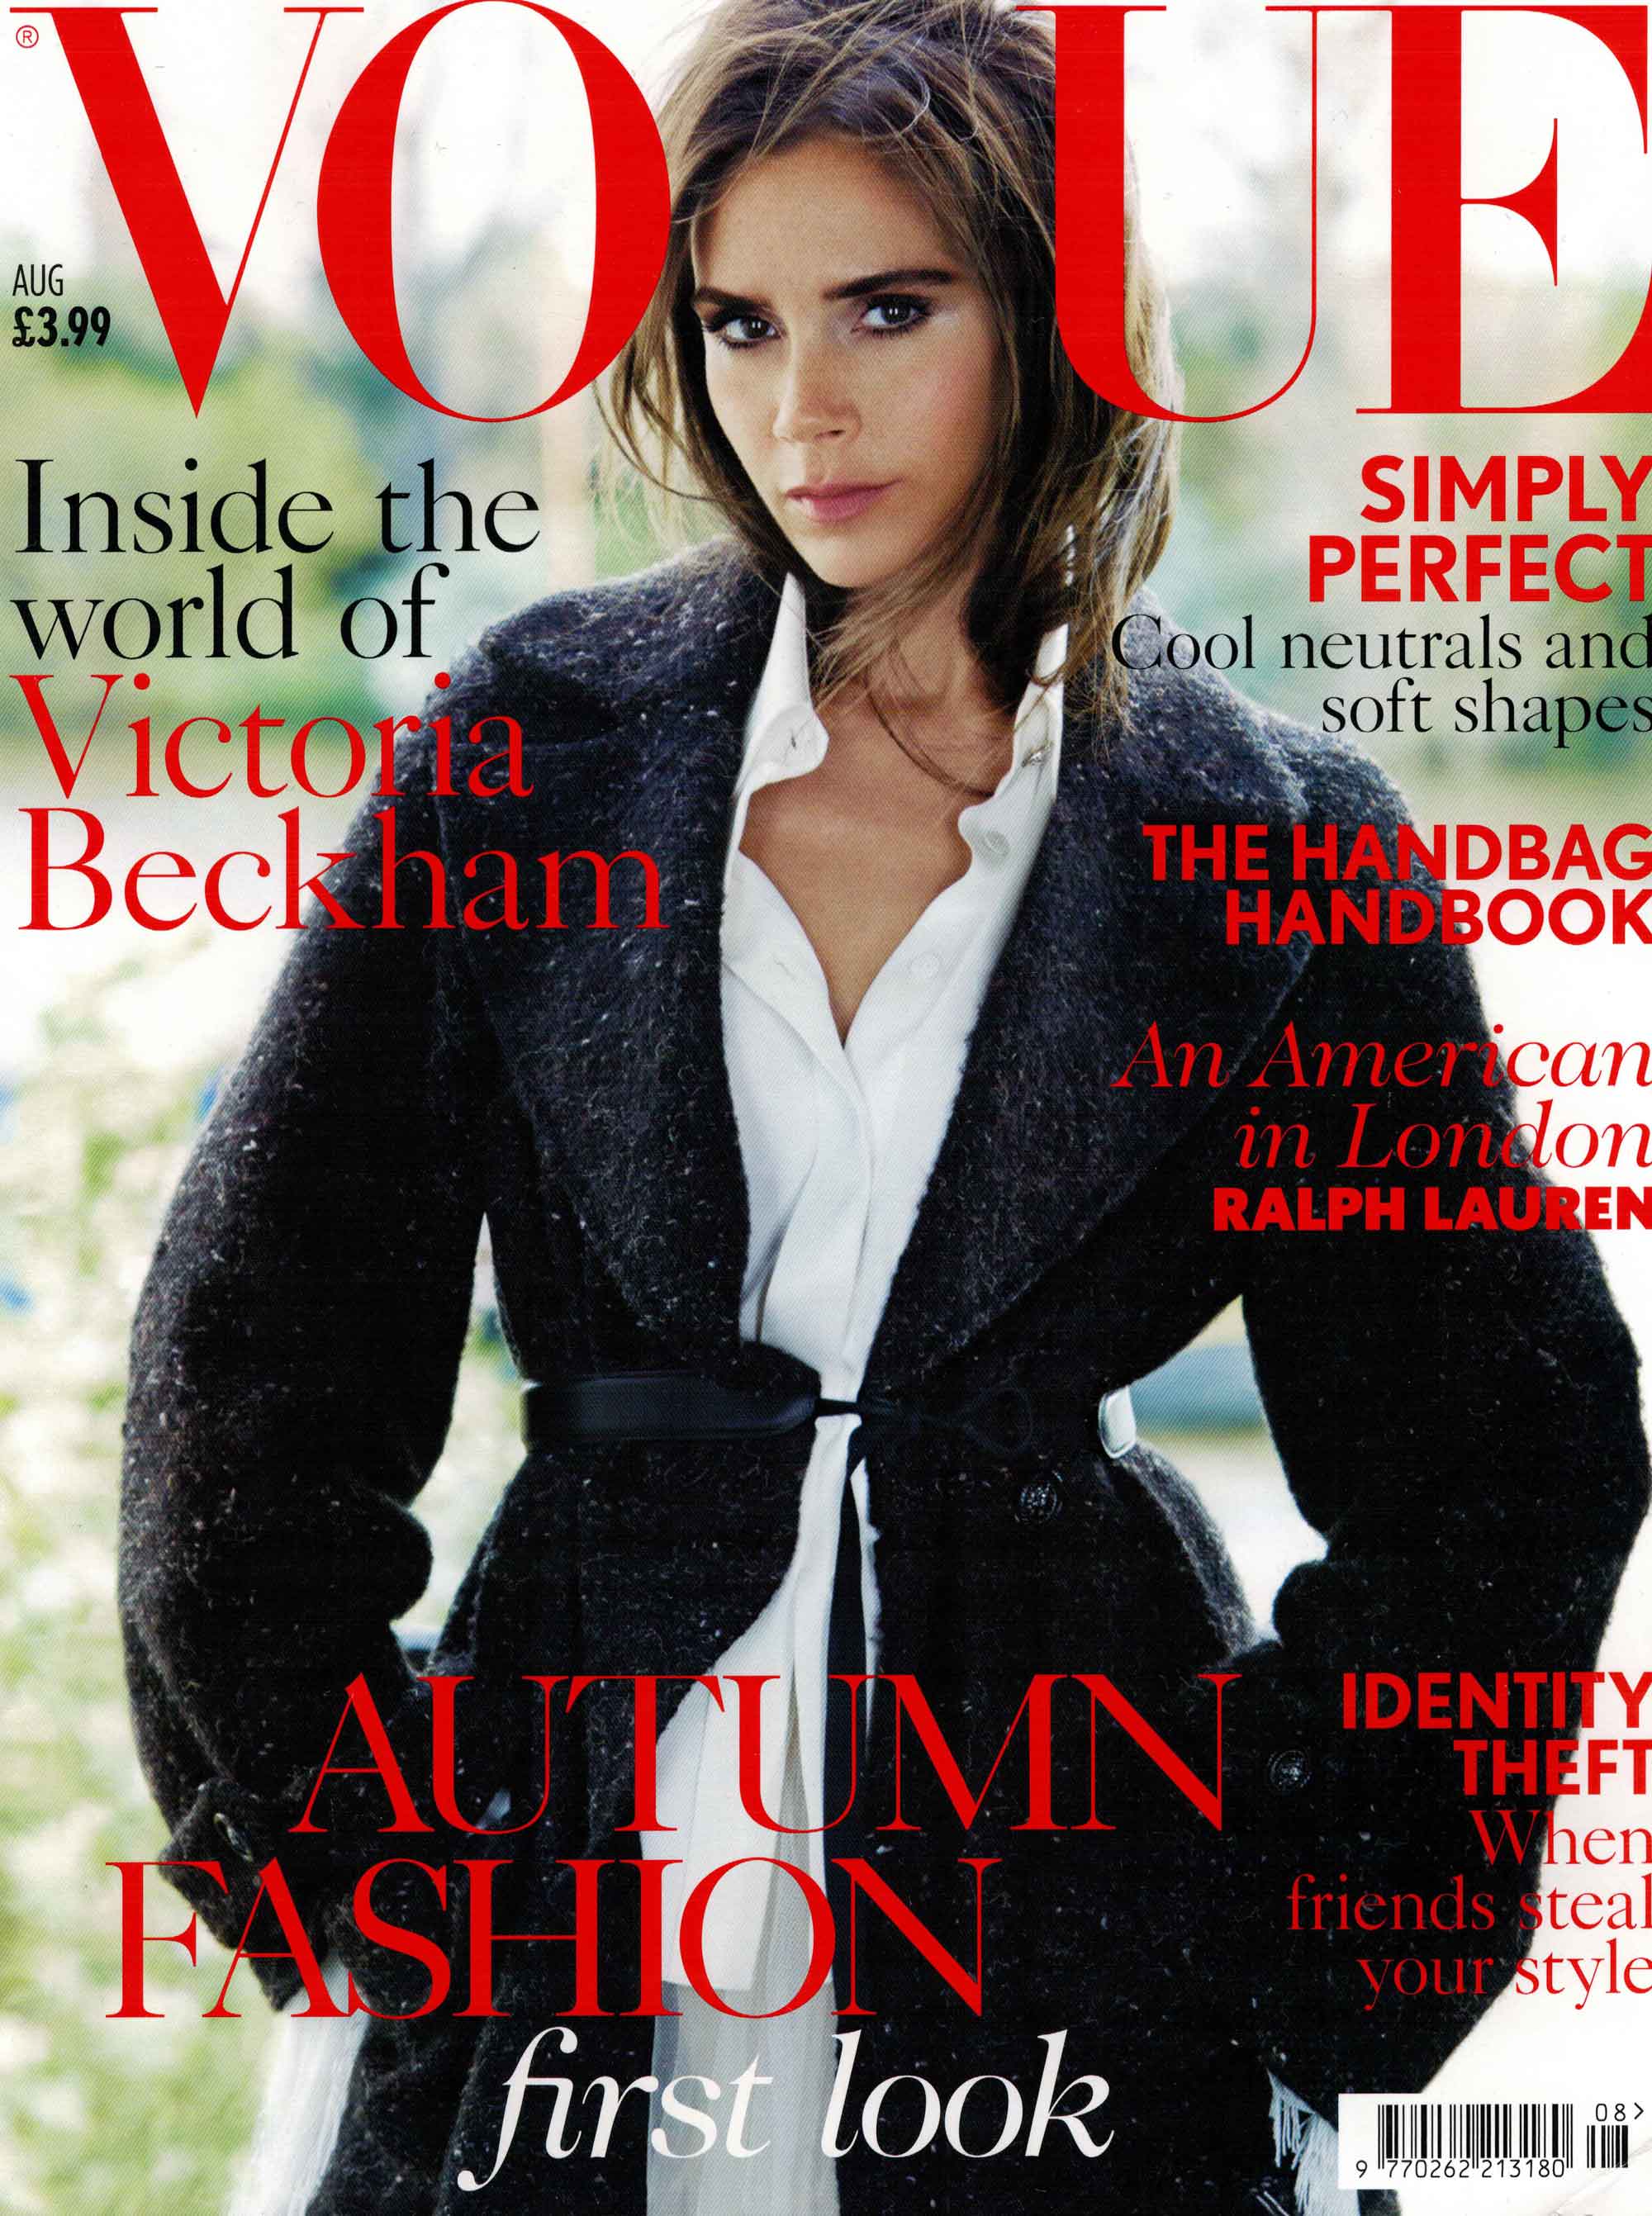 Vogue-Aug-14-cover